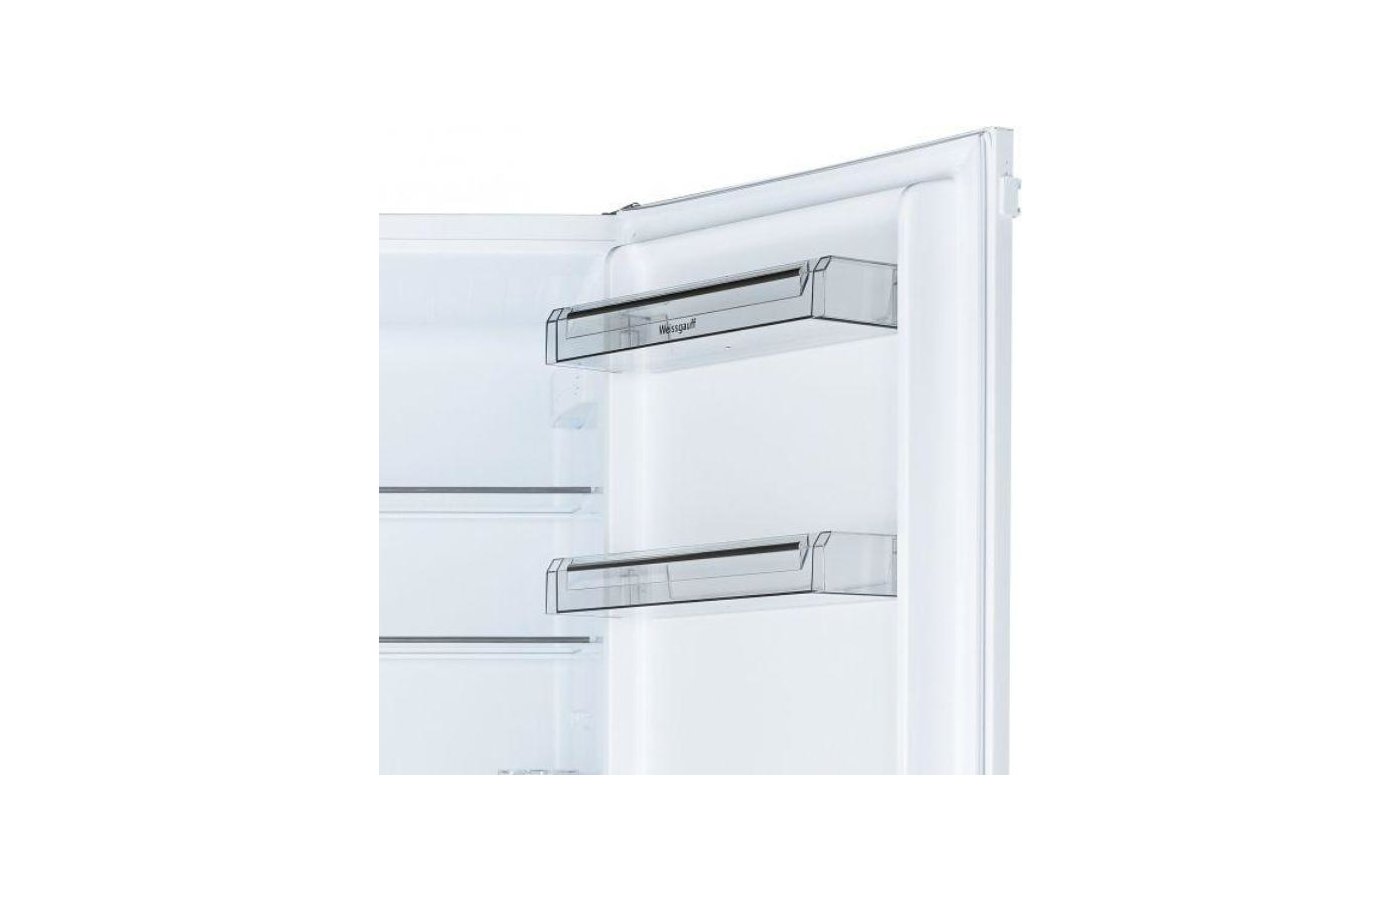 Weissgauff wrki 2801 md. Встроенный холодильник Weissgauff WRKI 2801 MD. Встраиваемый холодильник Weissgauff WRKI 2801 MD Размеры. Weissgauff WRKI 2801 MD схема встраивания.